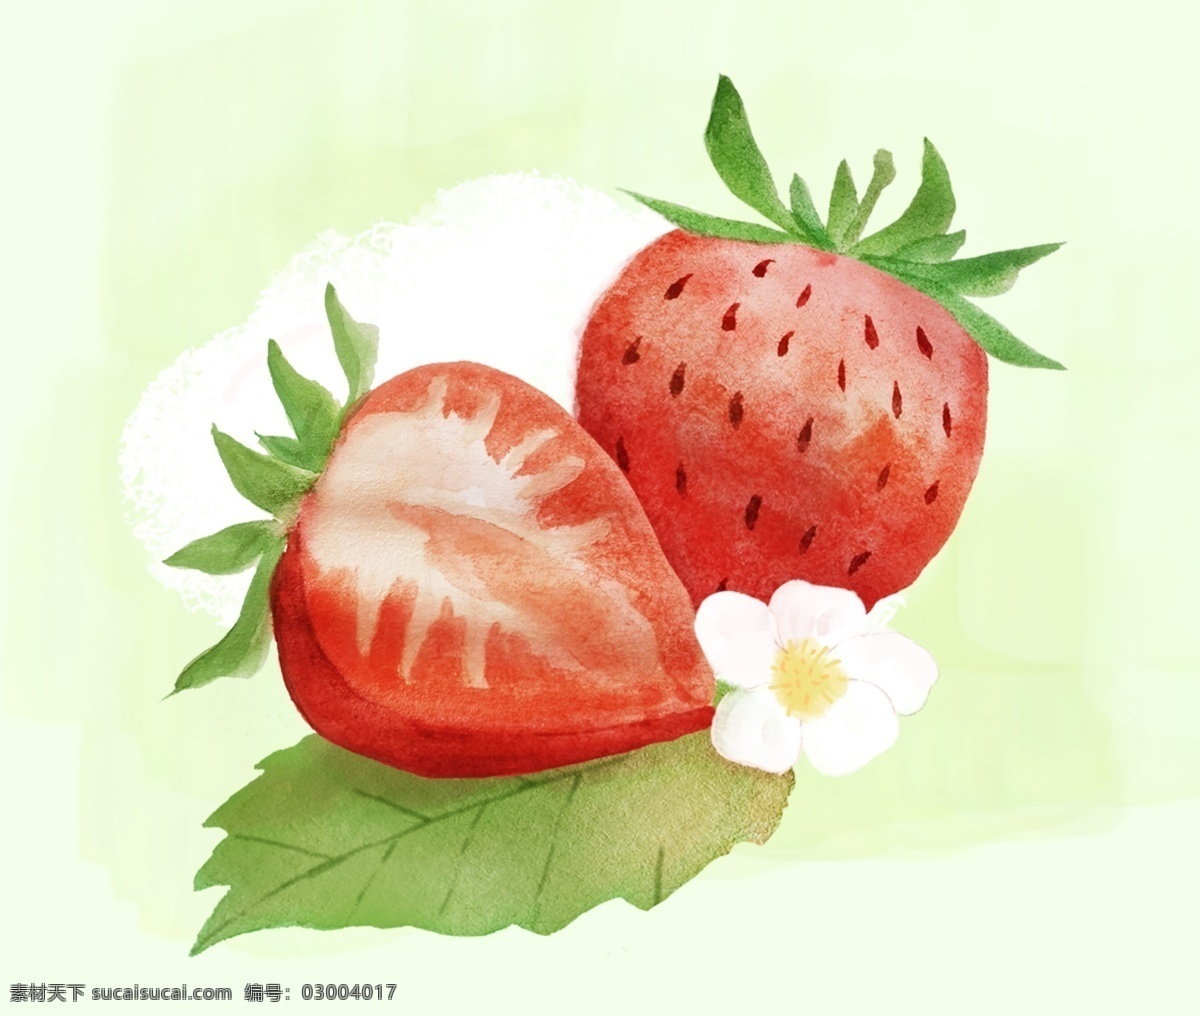 两个草莓 草莓 水果 植物 春季水果 网红水果 水彩画 水彩水果 插画 儿童插画 半个草莓 草莓花 生物世界